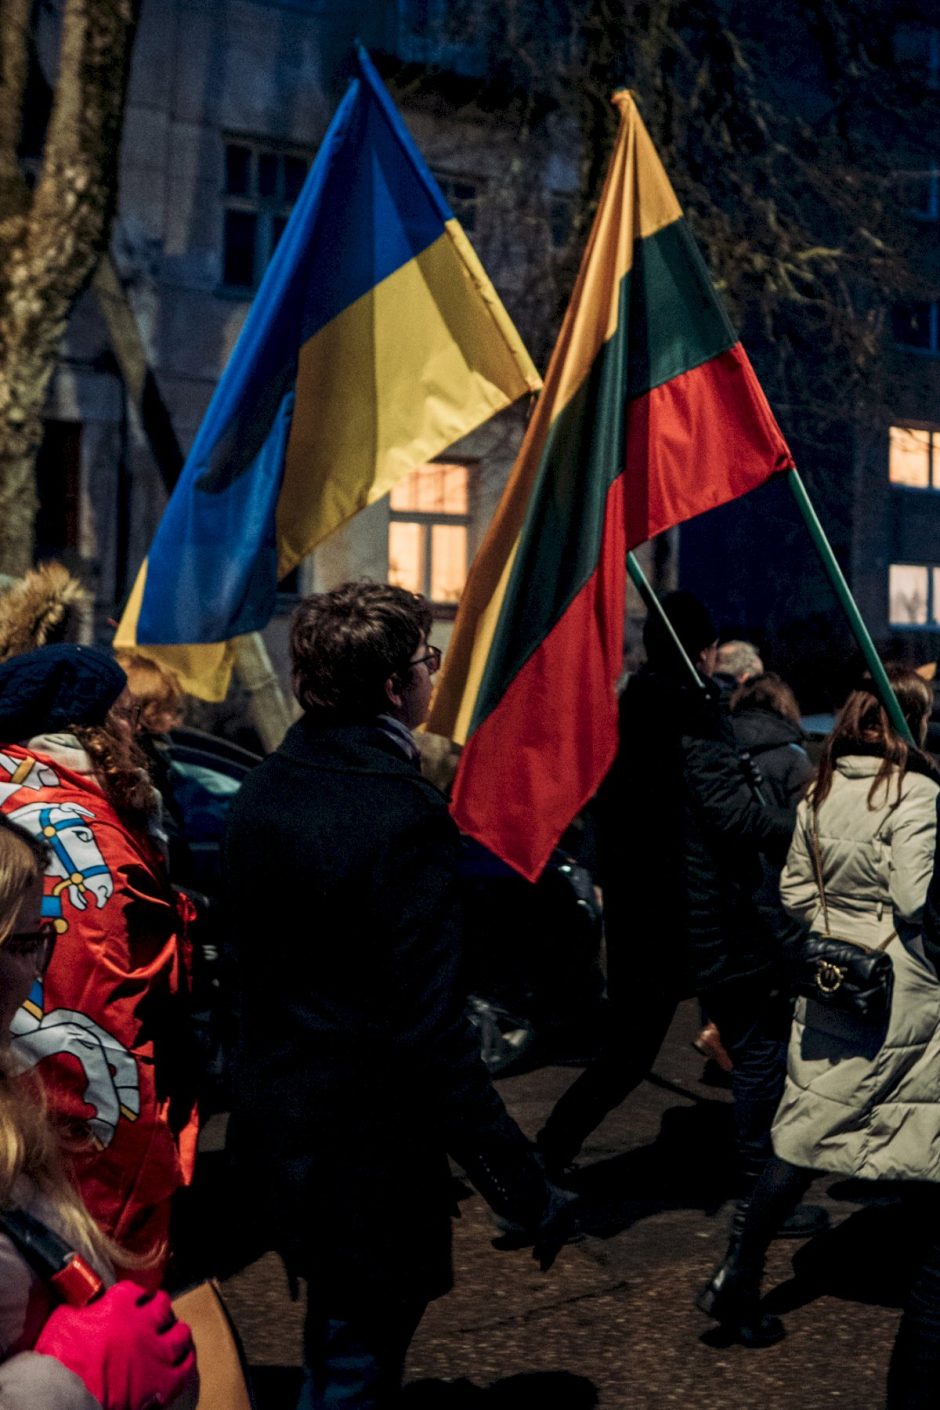 Į Lietuvą medicininei reabilitacijai atvyksta dar 67 kovotojai iš Ukrainos